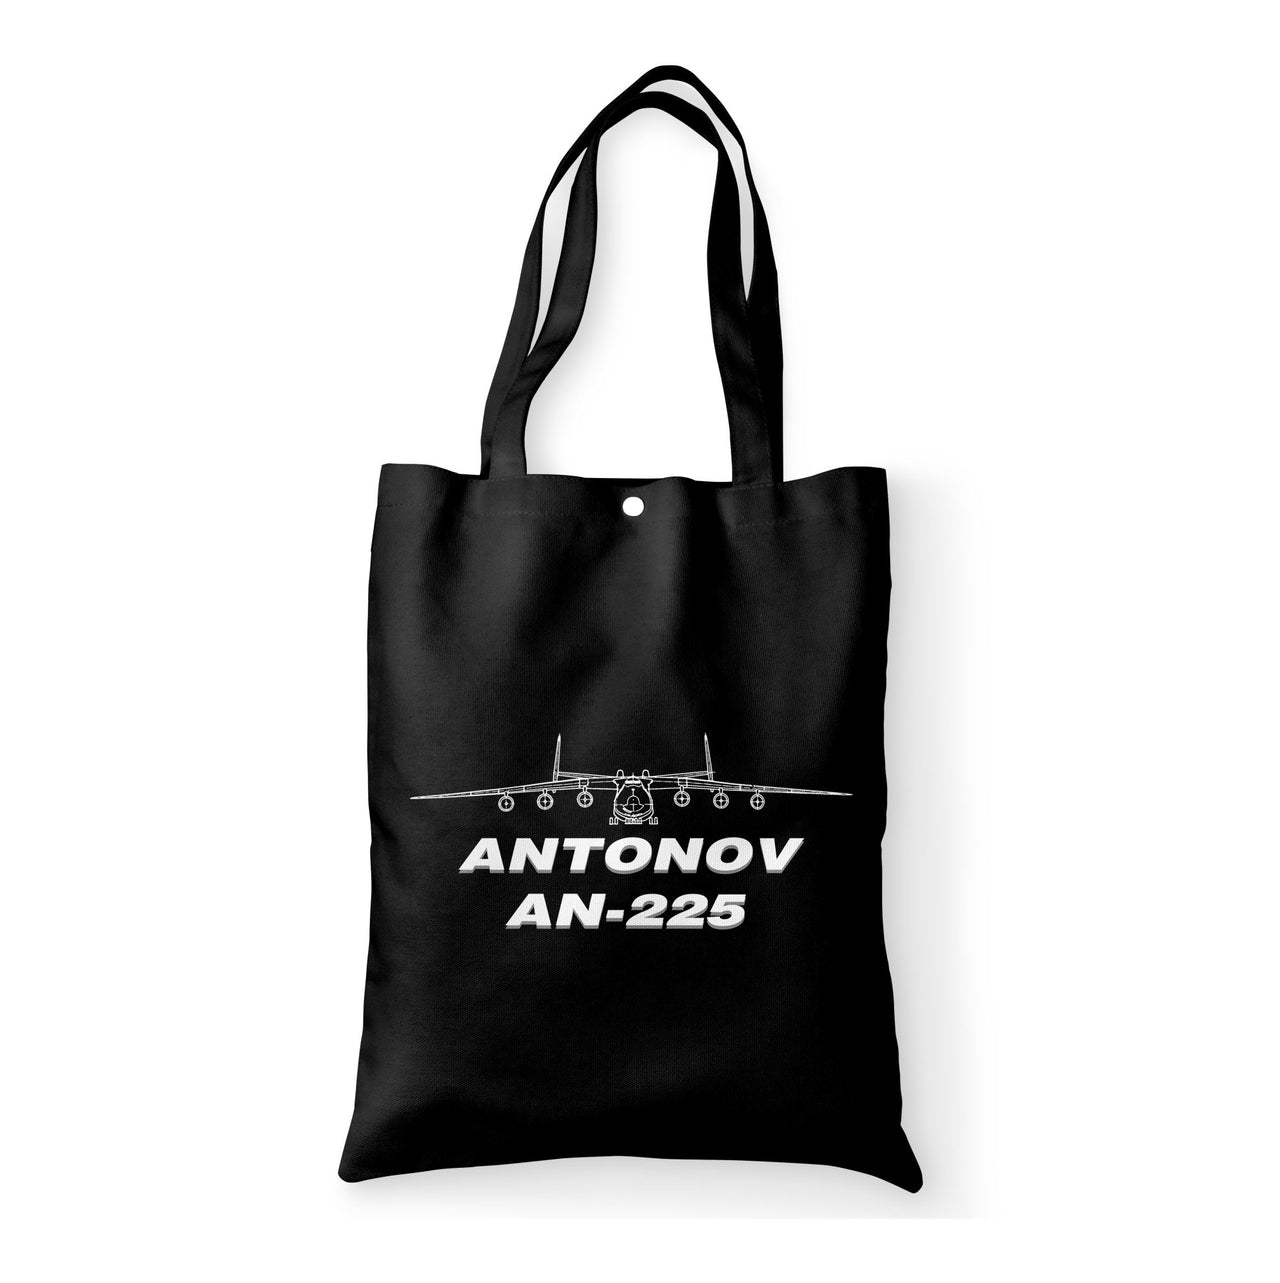 Antonov AN-225 (26) Designed Tote Bags